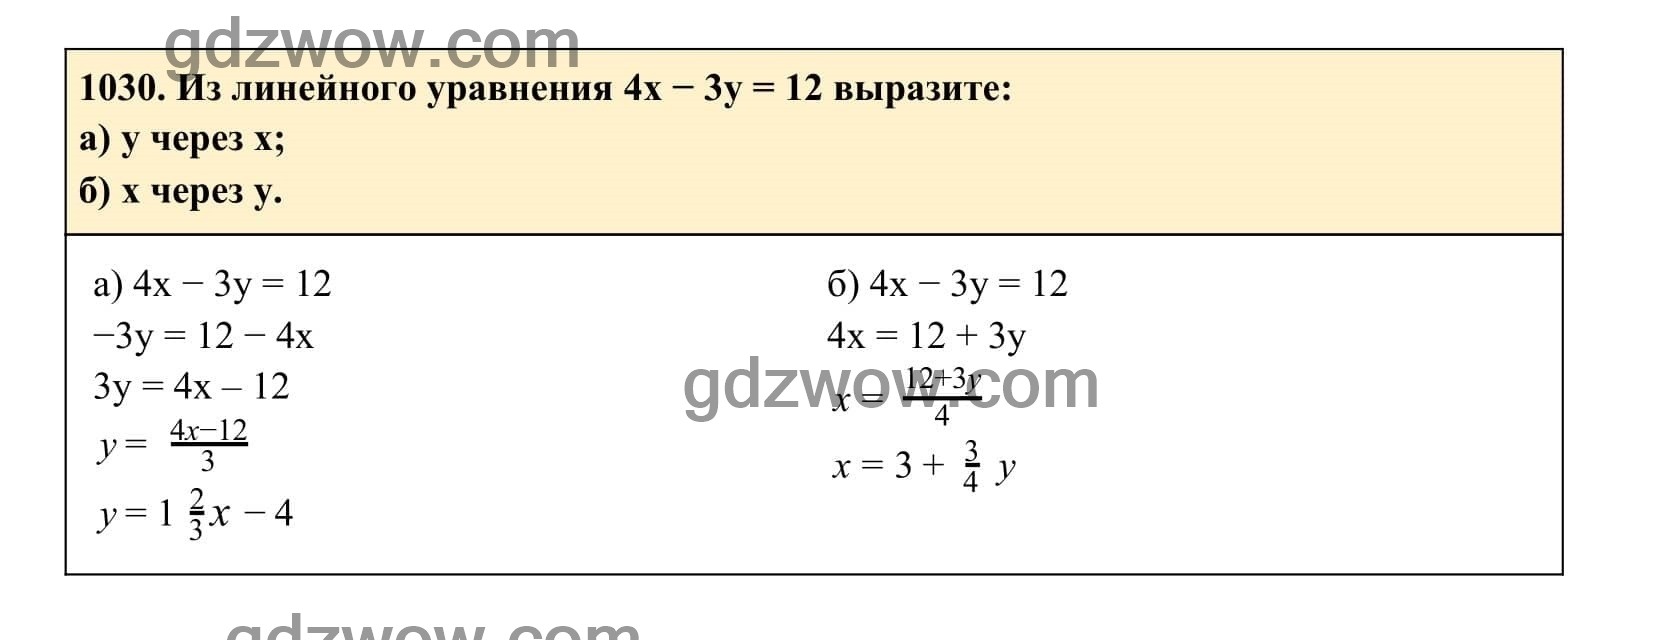 Упражнение 1030 - ГДЗ по Алгебре 7 класс Учебник Макарычев (решебник) - GDZwow